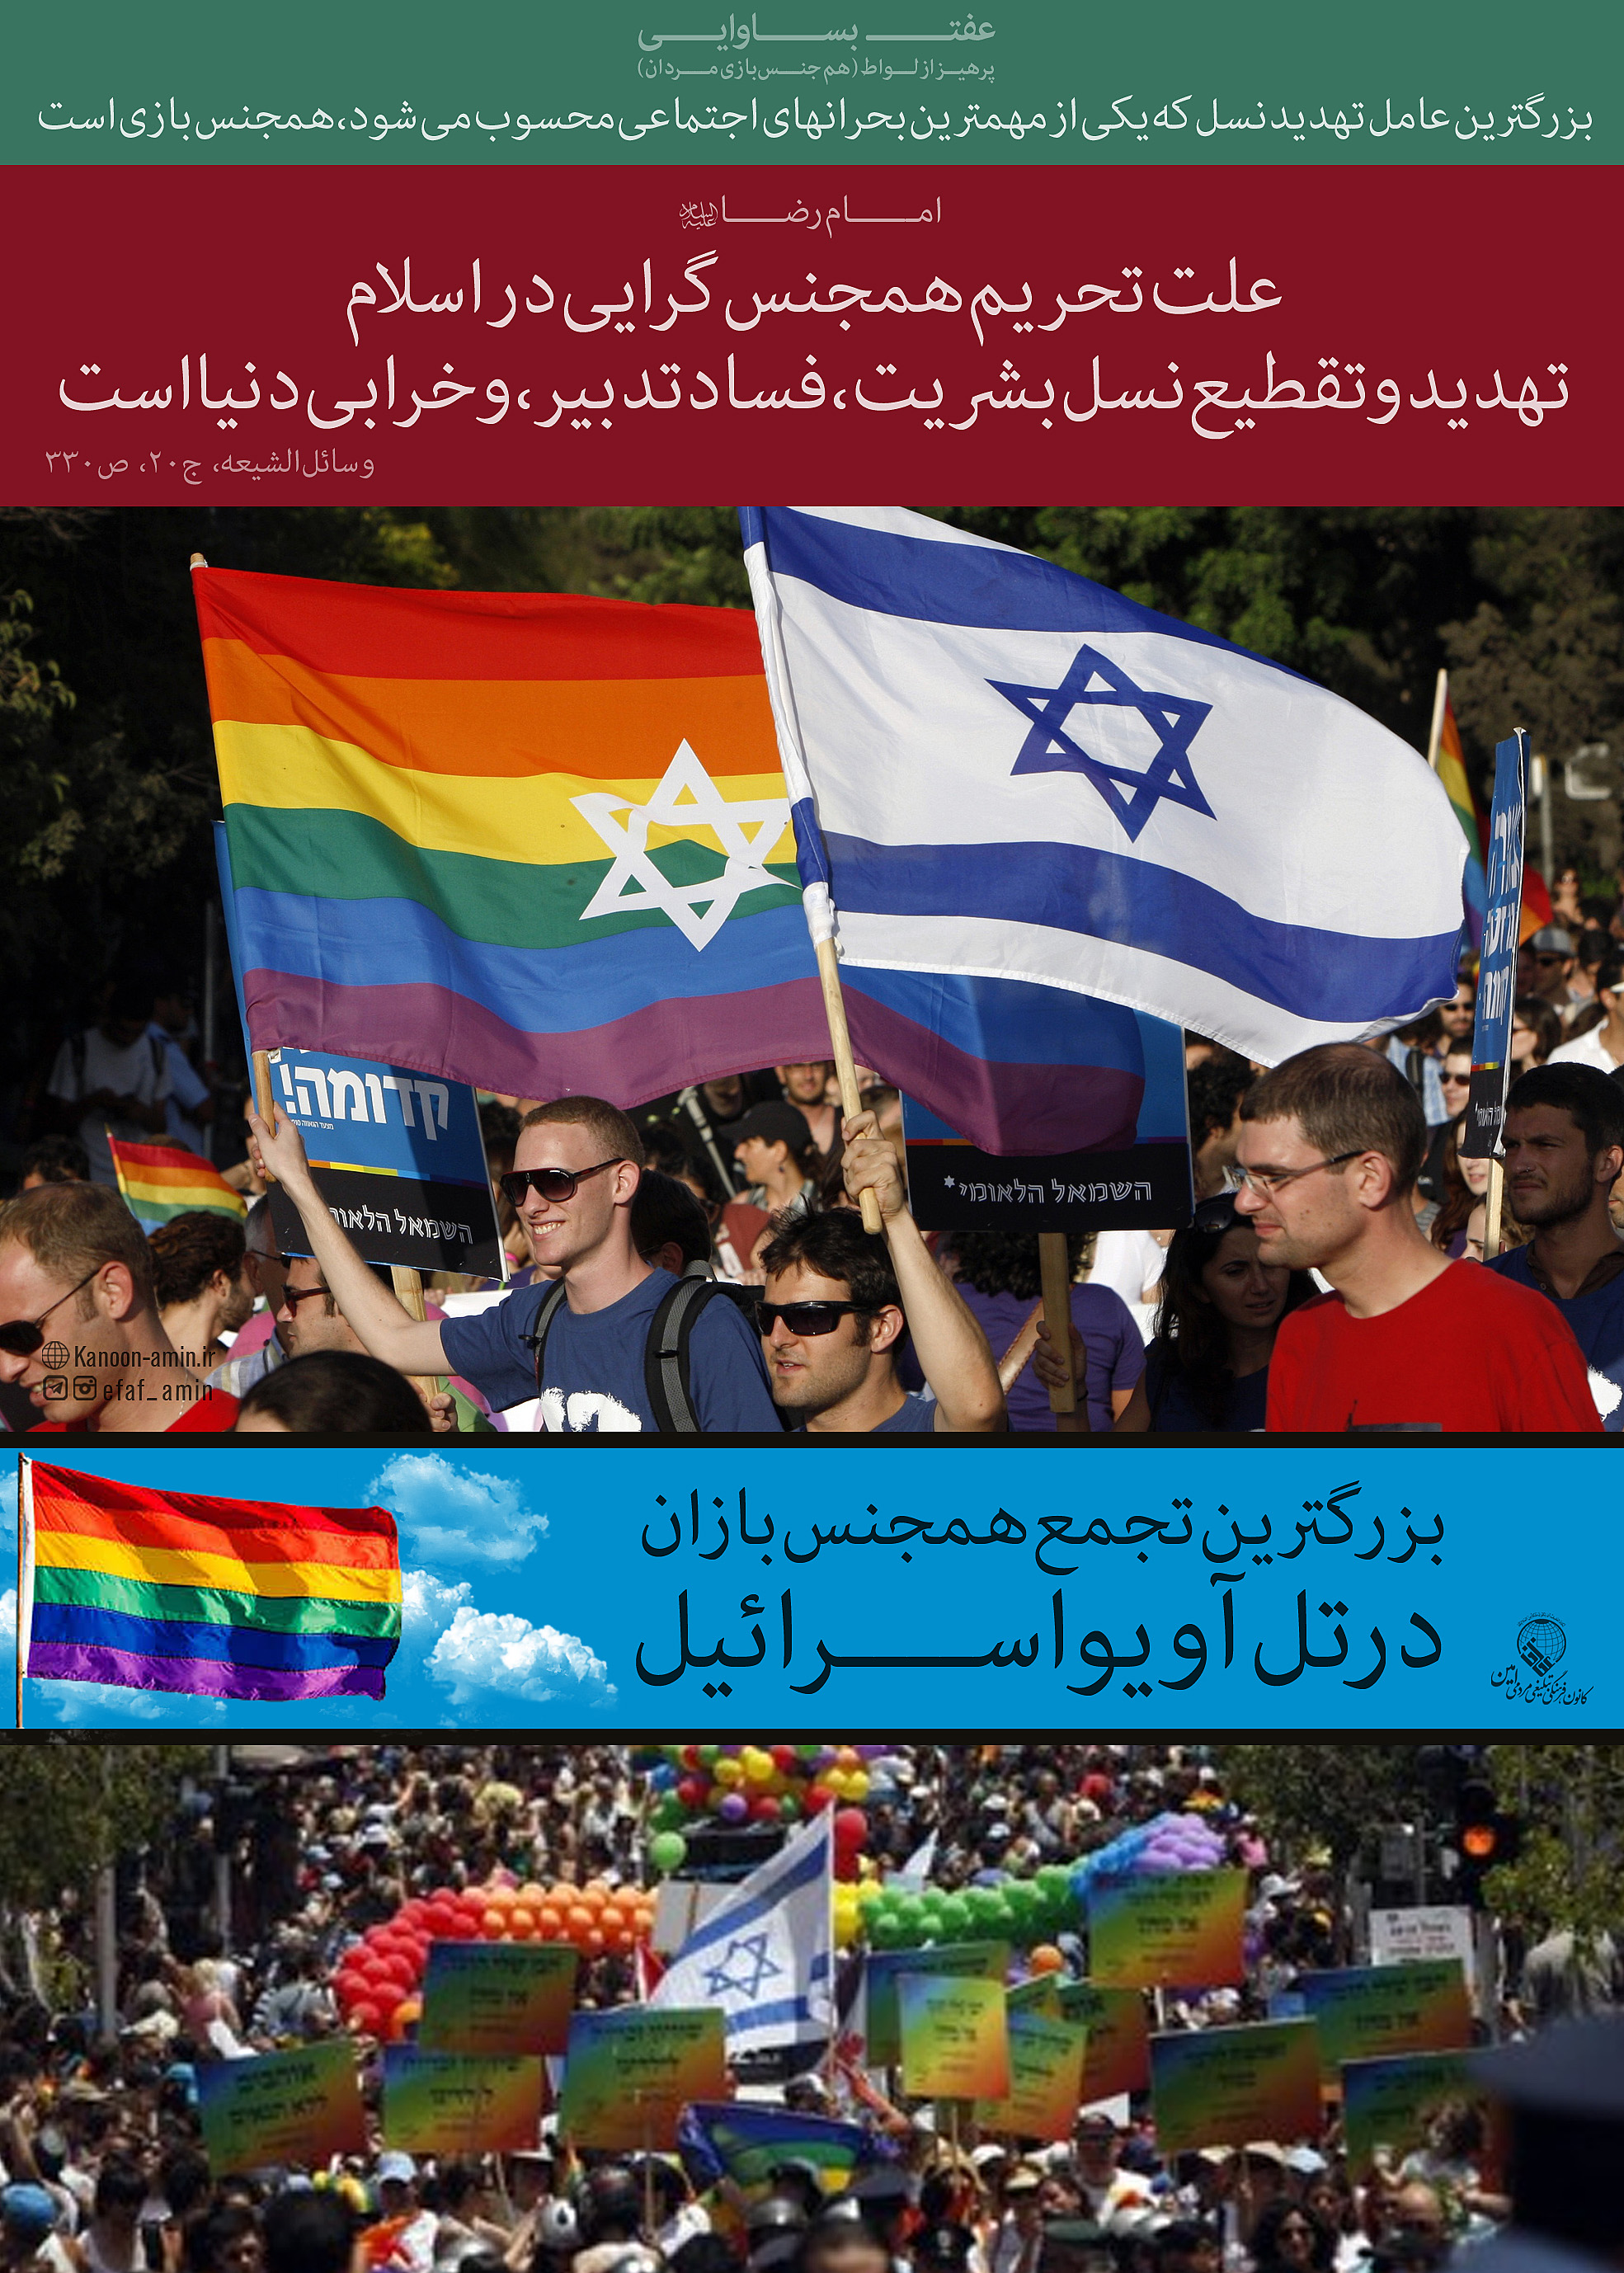 لواط و تهدید نسل (تل آویو اسرائیل، مرکز تجمع همجنسبازان دنیا)